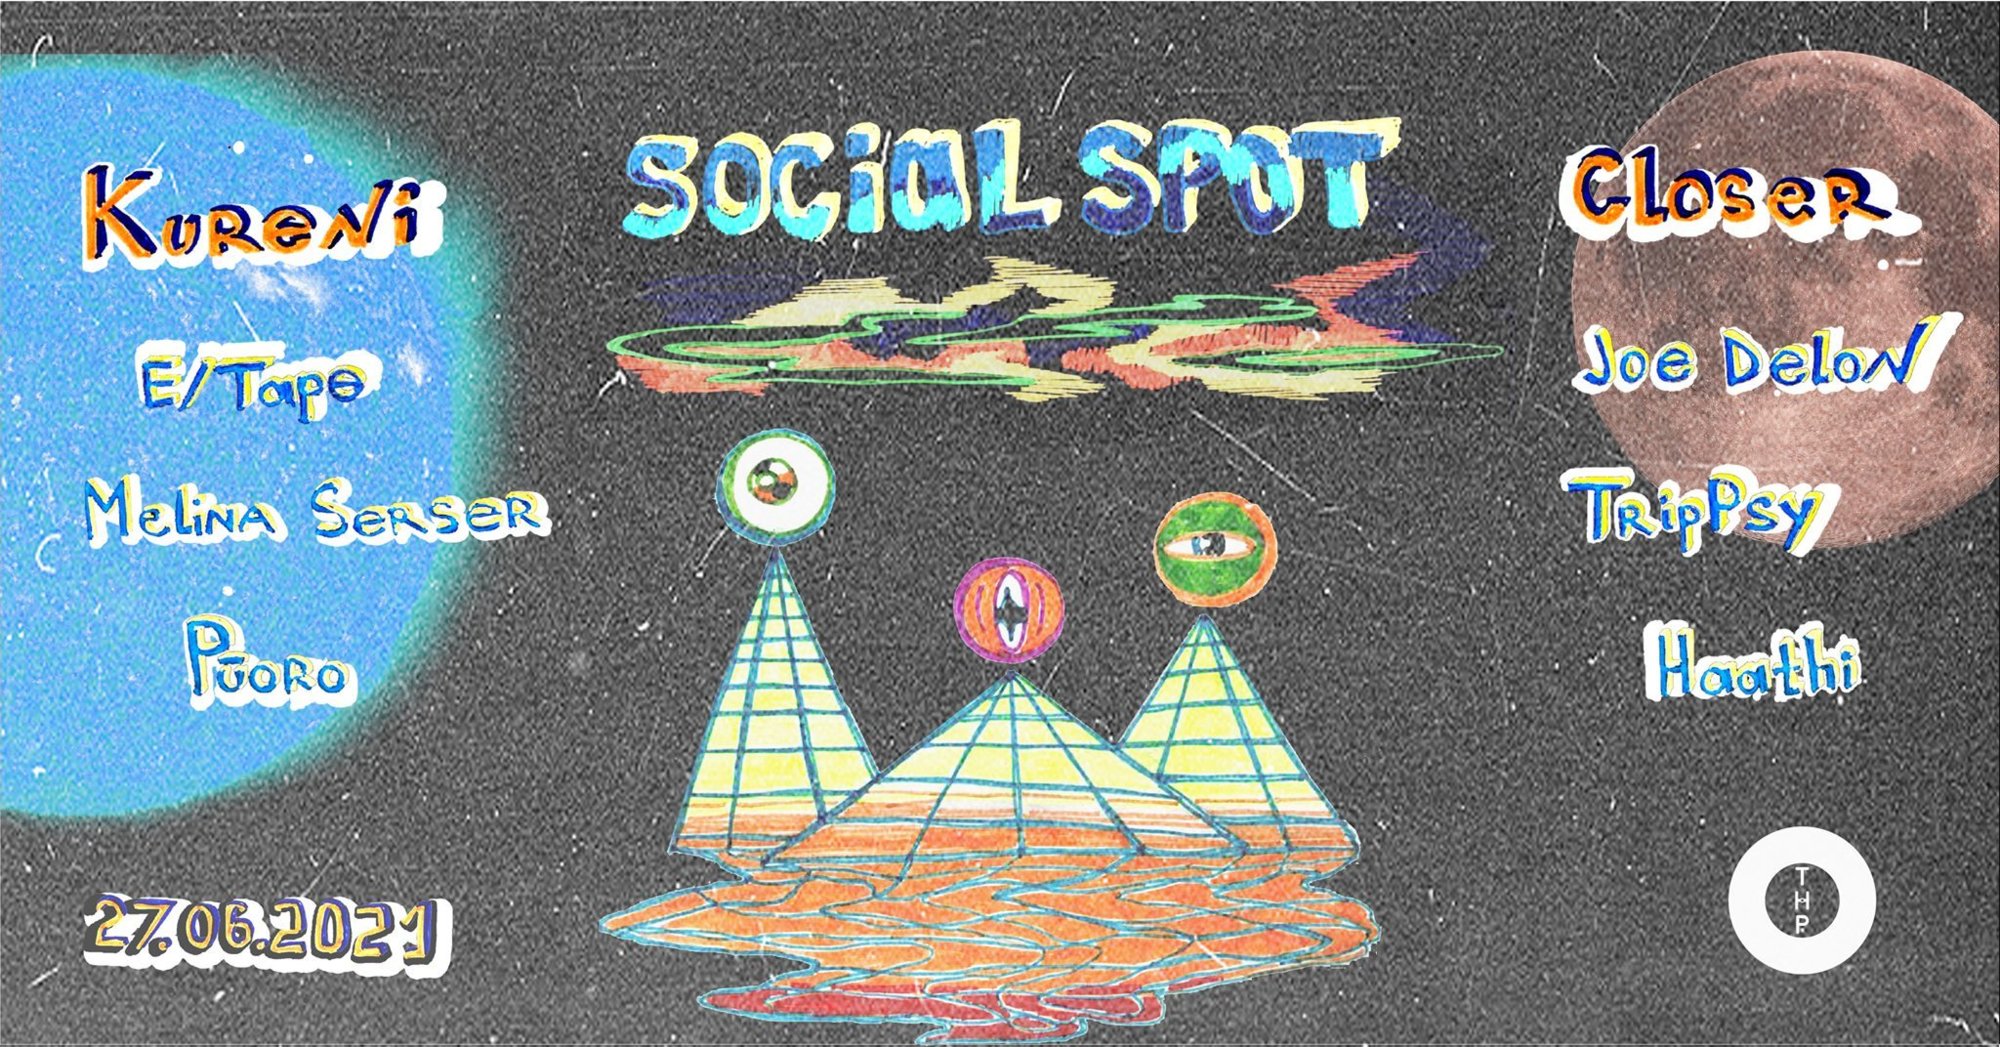 Social Spot